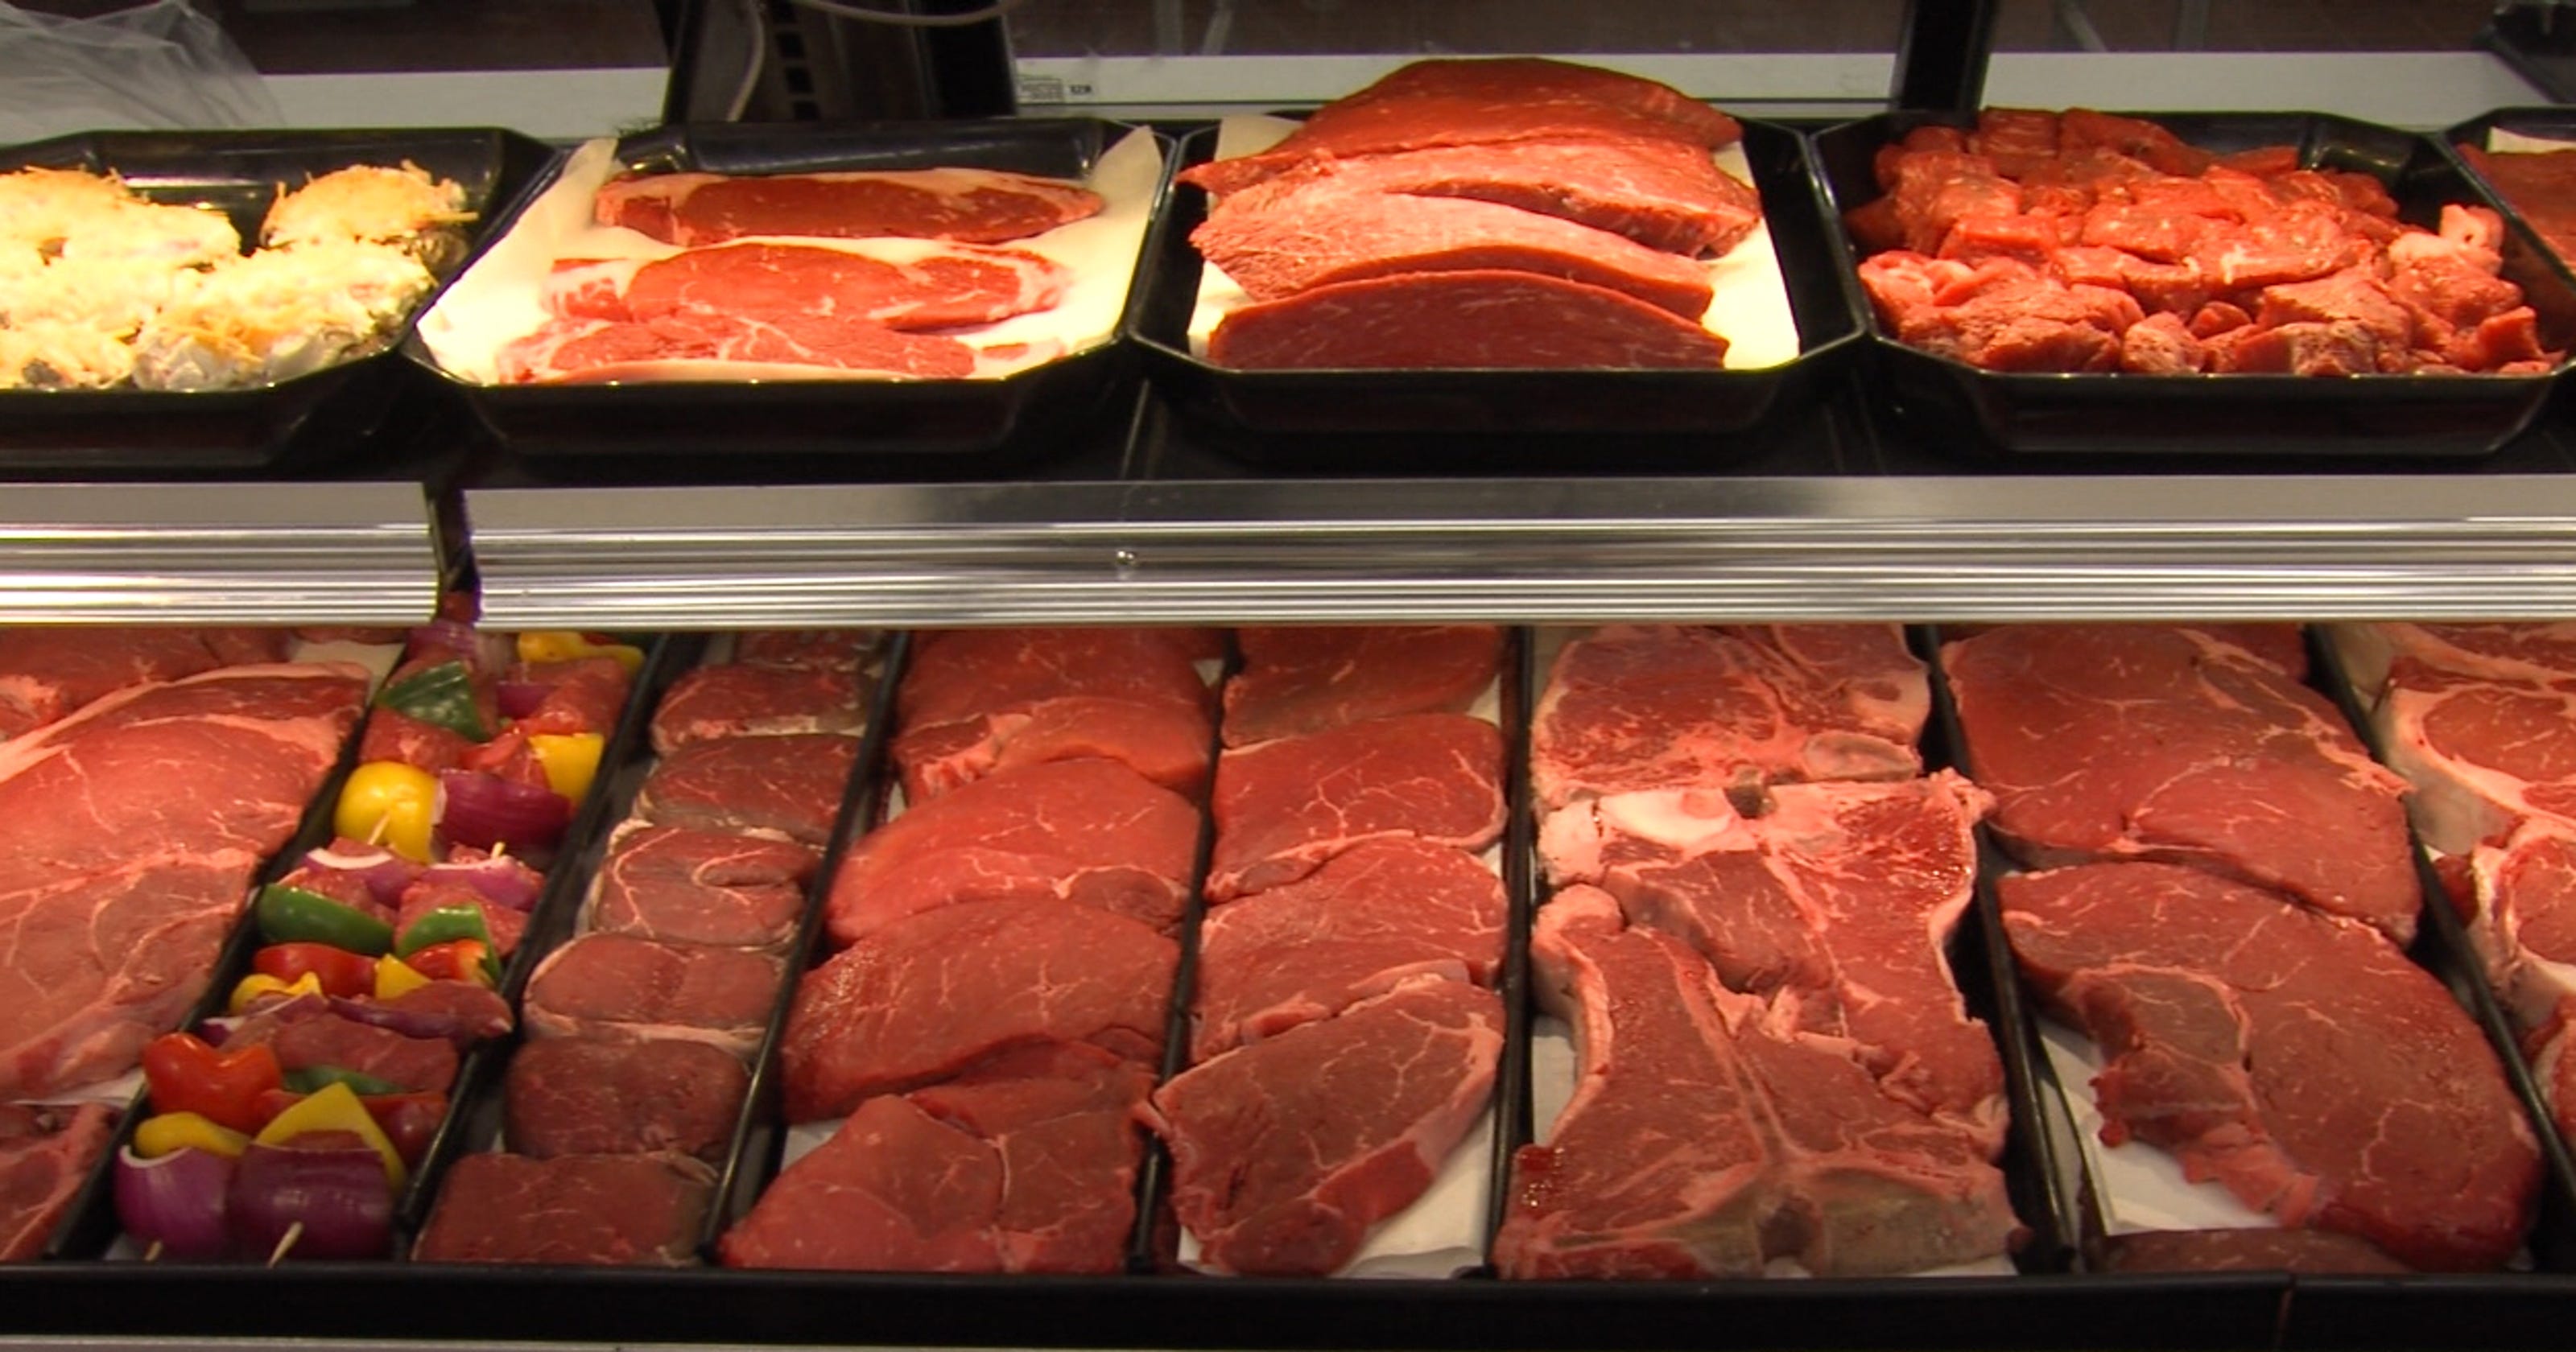 Fareway Tests Meat Market Concept